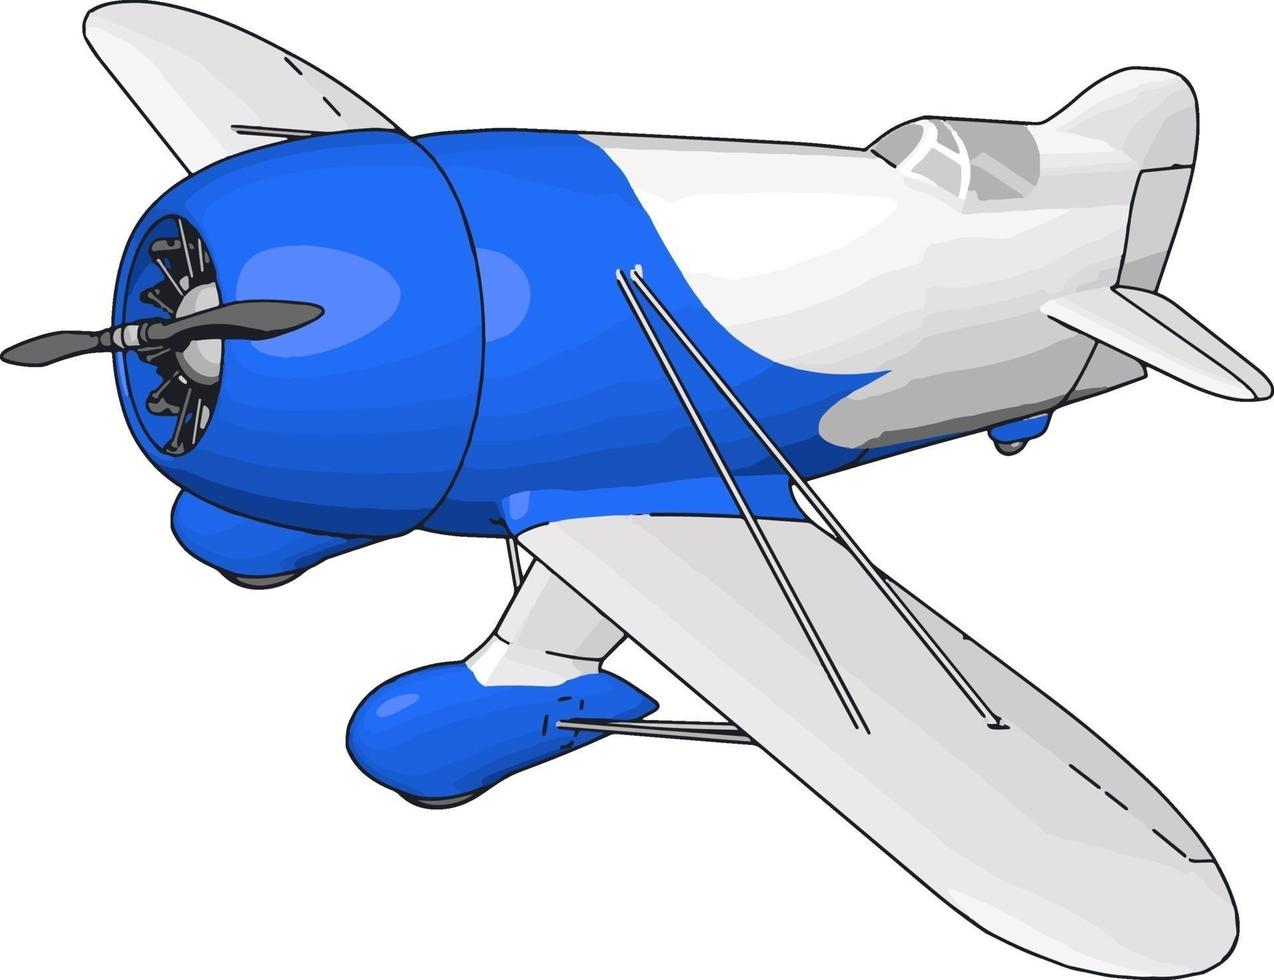 ancien avion rétro blanc et bleu, illustration, vecteur sur fond blanc.